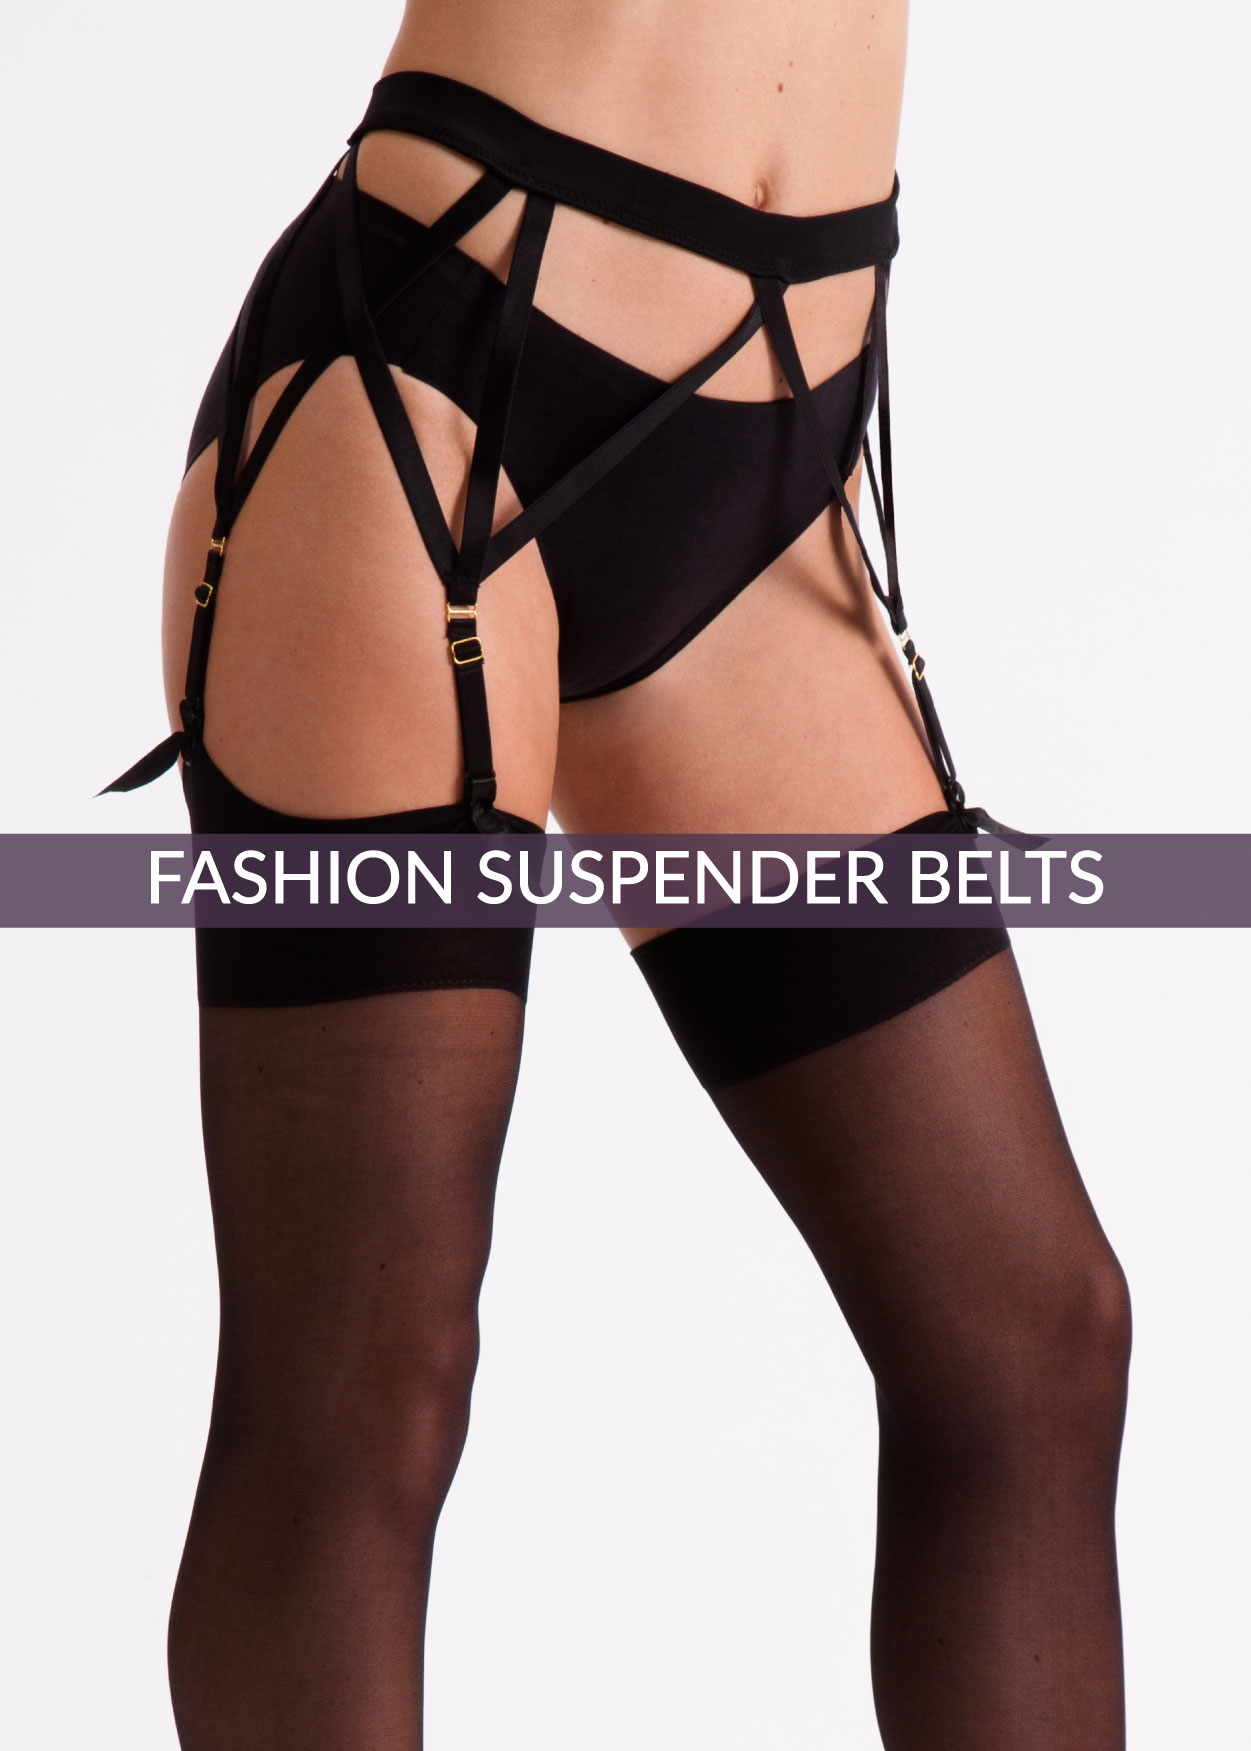 Fashion Suspender Belts